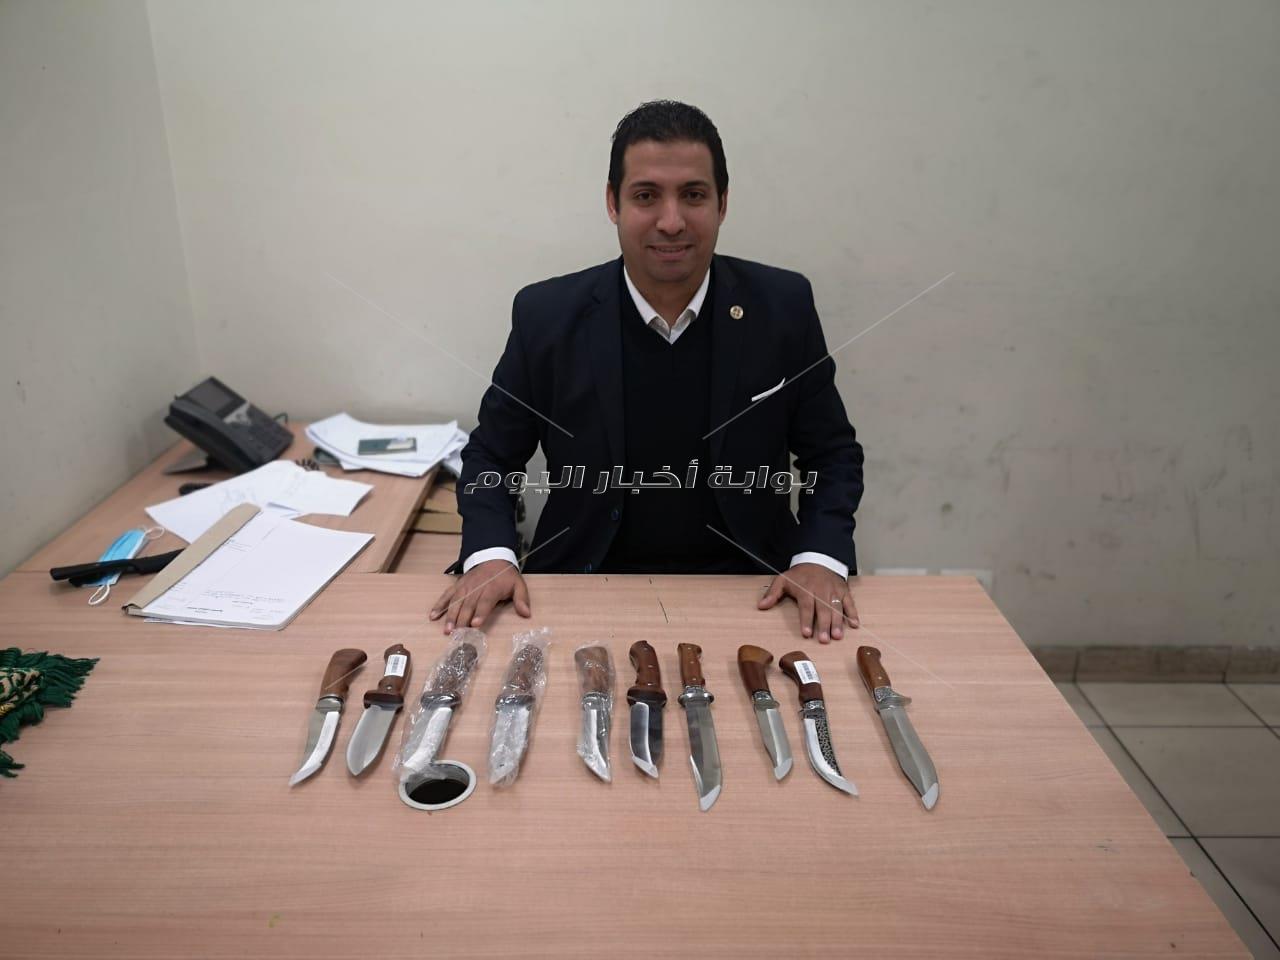 جمارك مطار القاهرة تضبط  تهريب اسلحة بيضاء وقطعة من الحشيش    